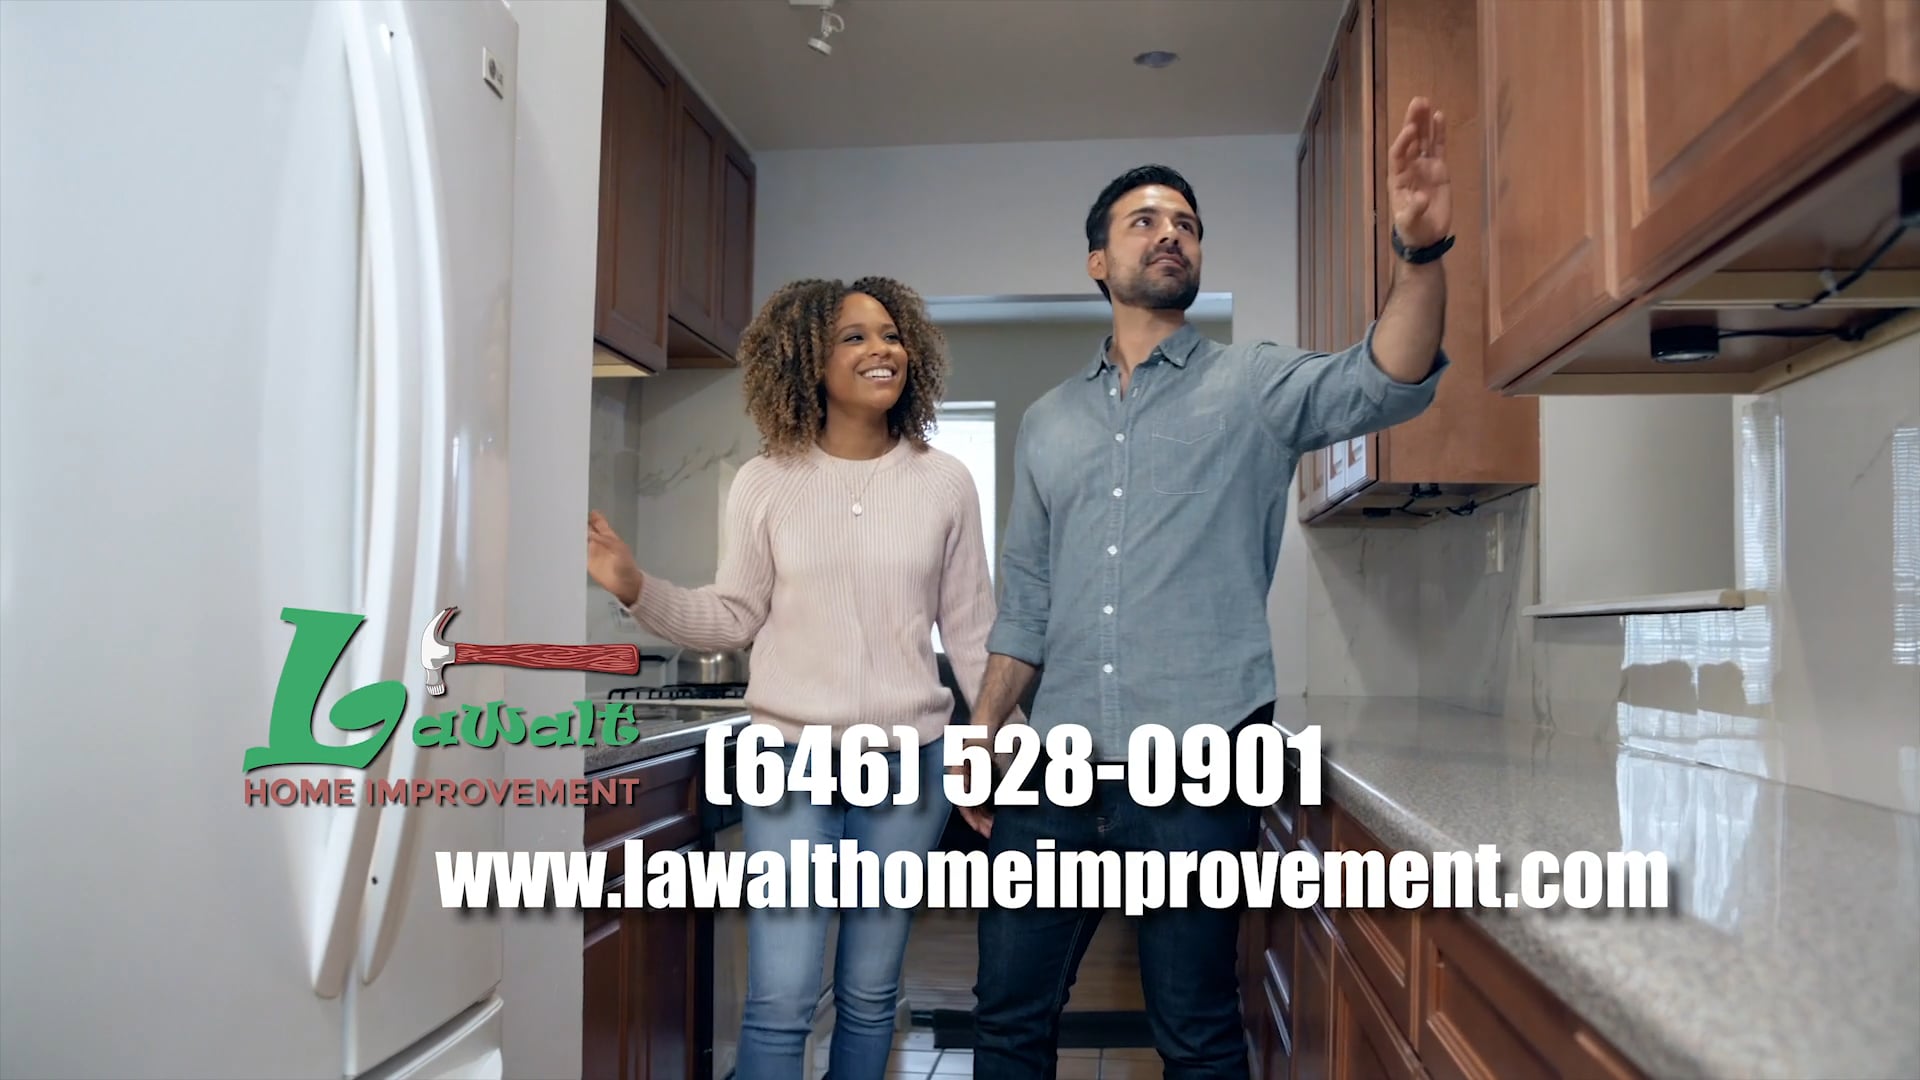 LaWalt Home Improvement (Kitchen Remodeling) Commercial